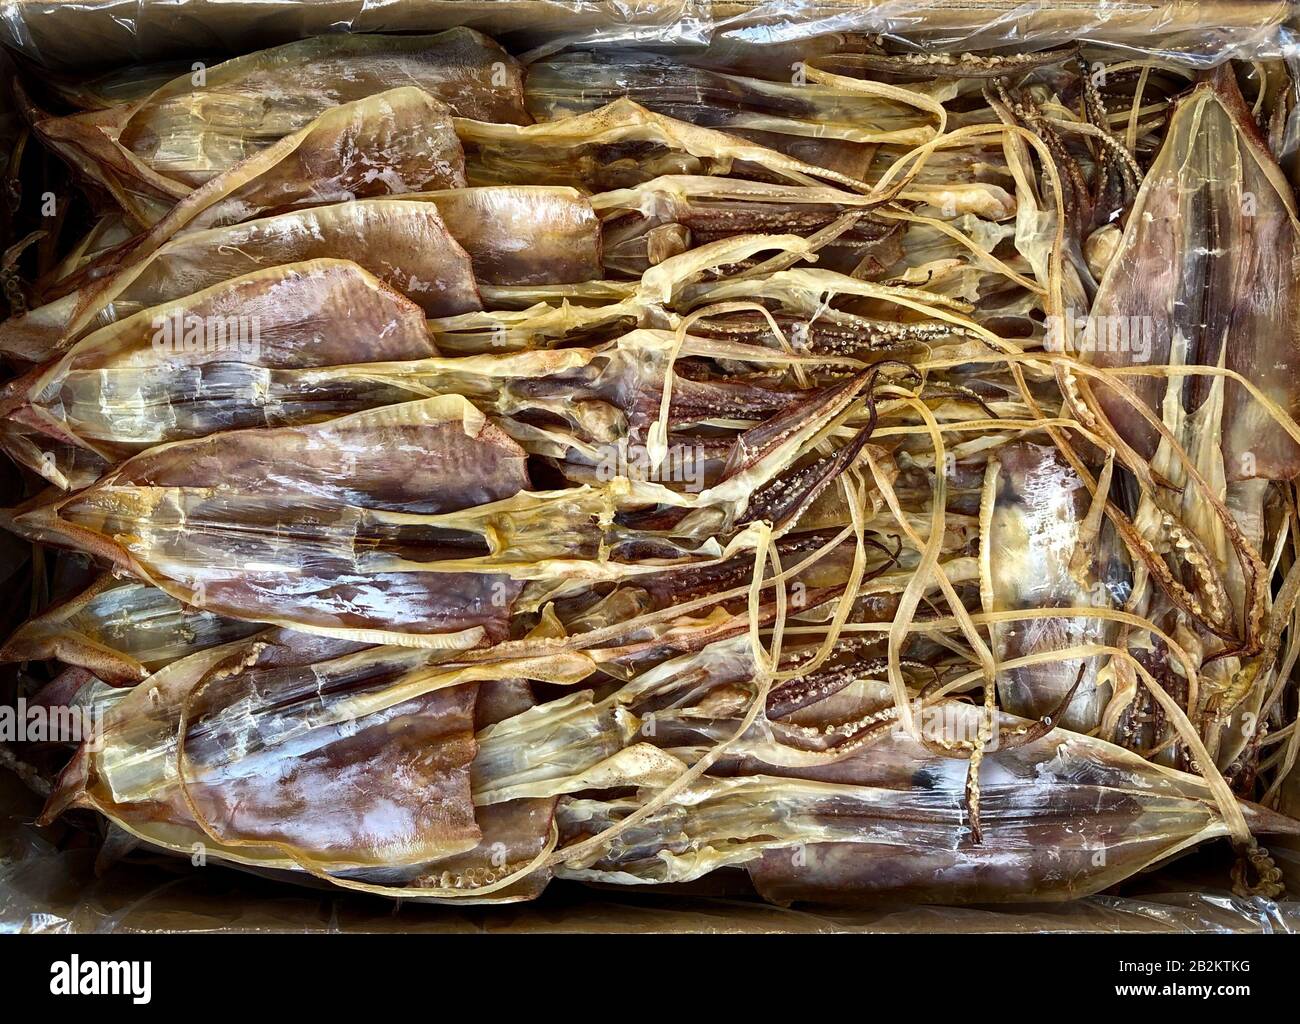 Getrocknetes Tintenfisch auf dem Lebensmittelmarkt in China, trockene Meeresfrüchte - Stockfoto